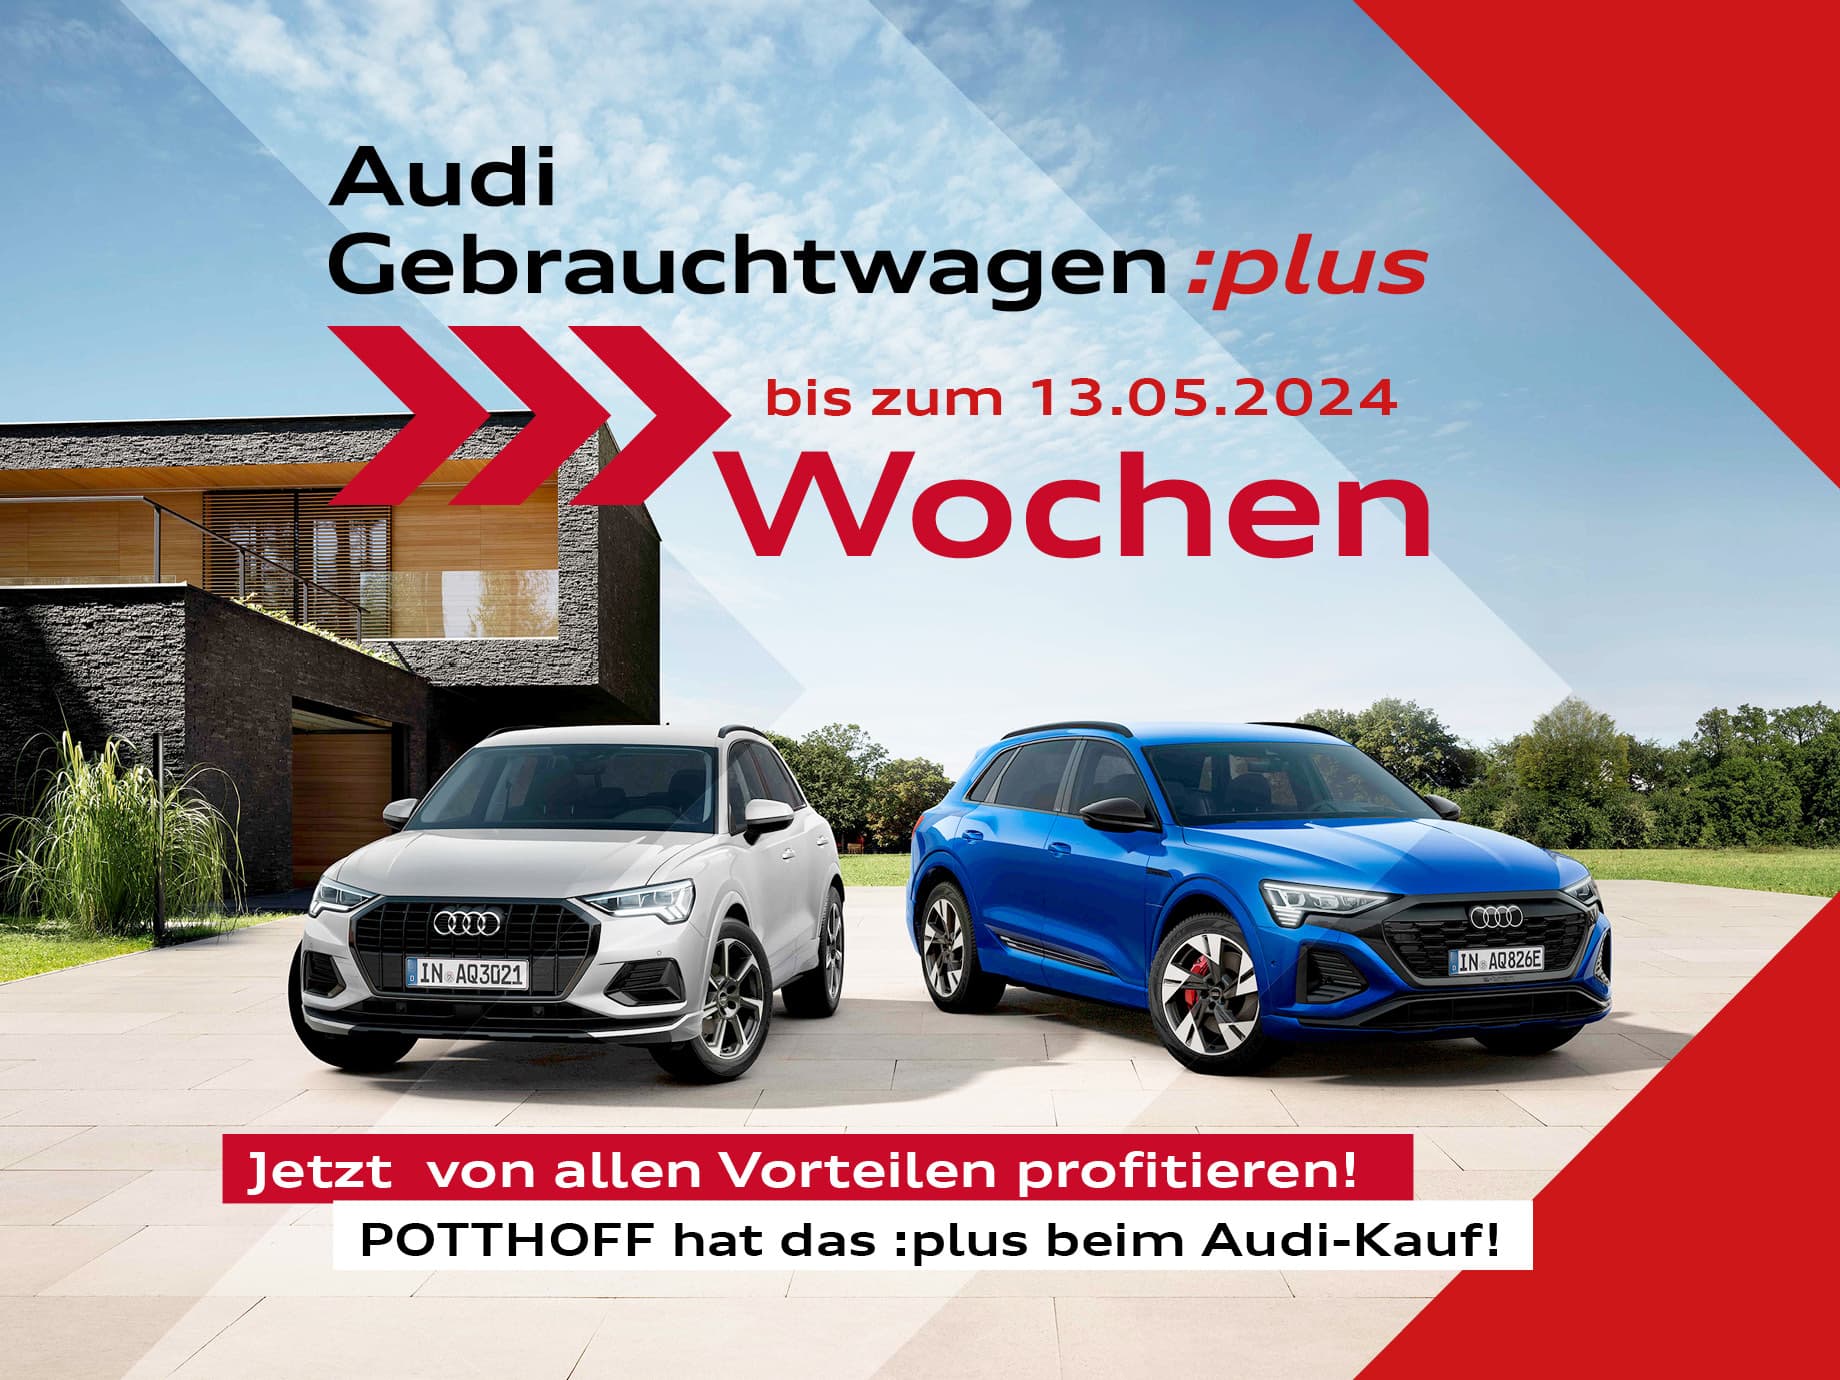 Die Audi Gebrauchtwagen-Wochen: bis zum 13.05.2024 bei POTTHOFF in Hamm.